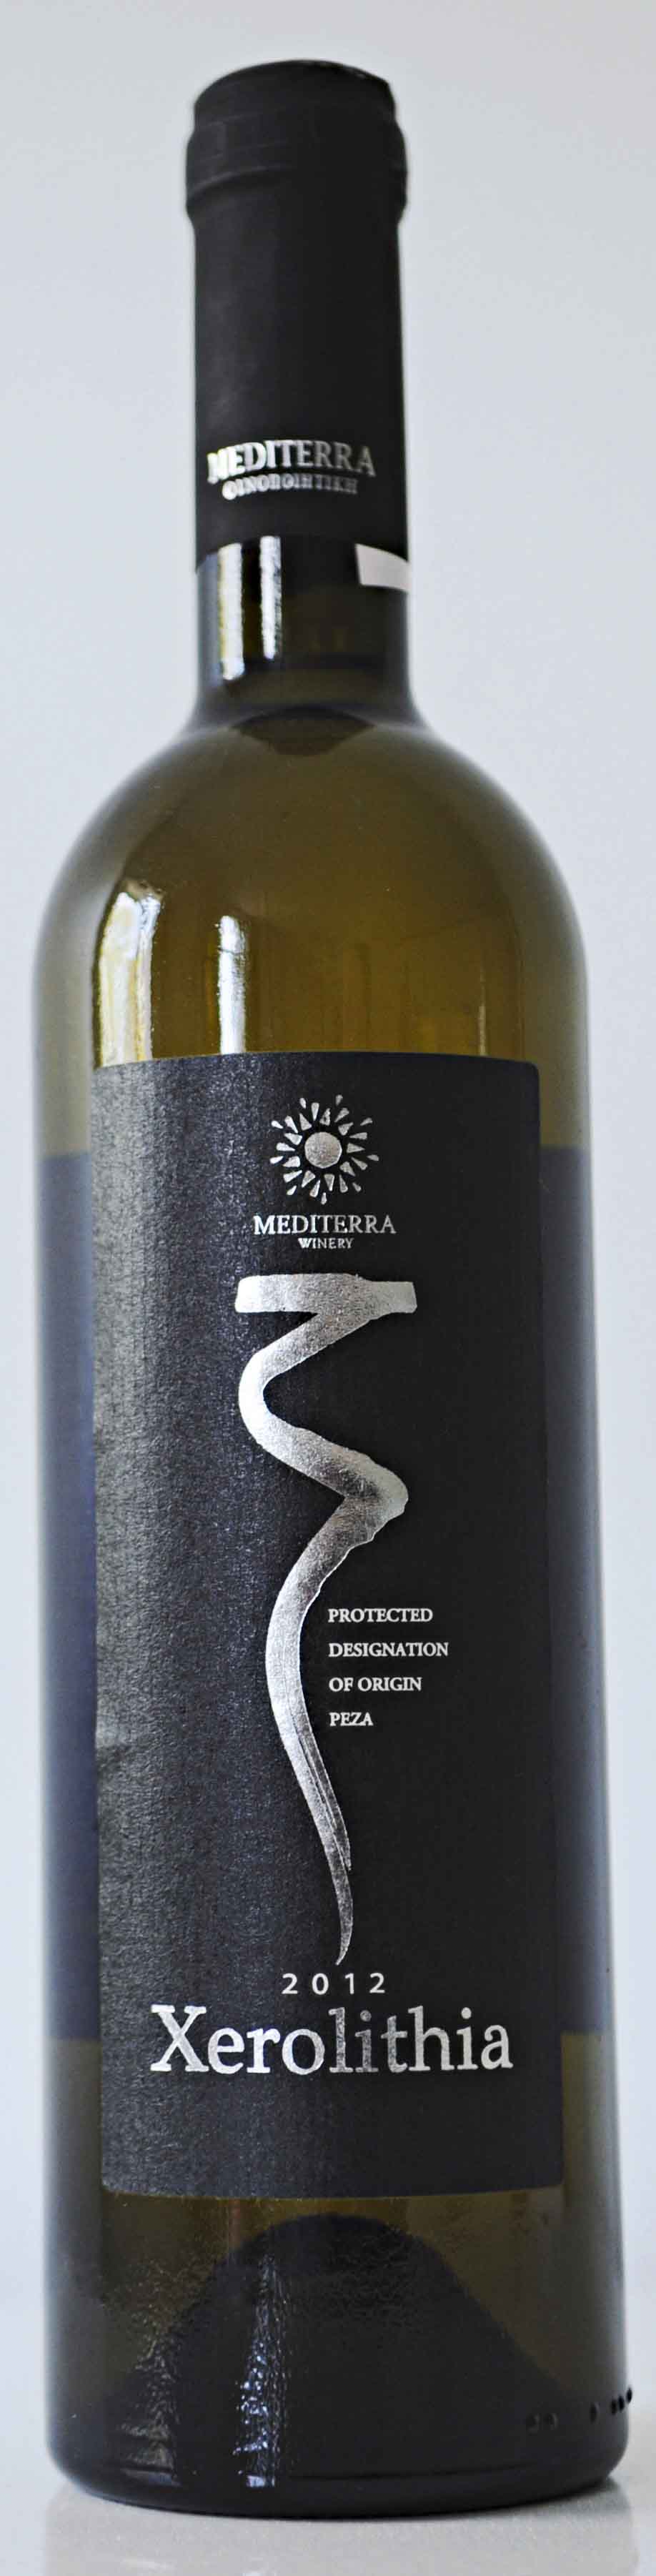 Mediterra Xerolithia 2012, £10